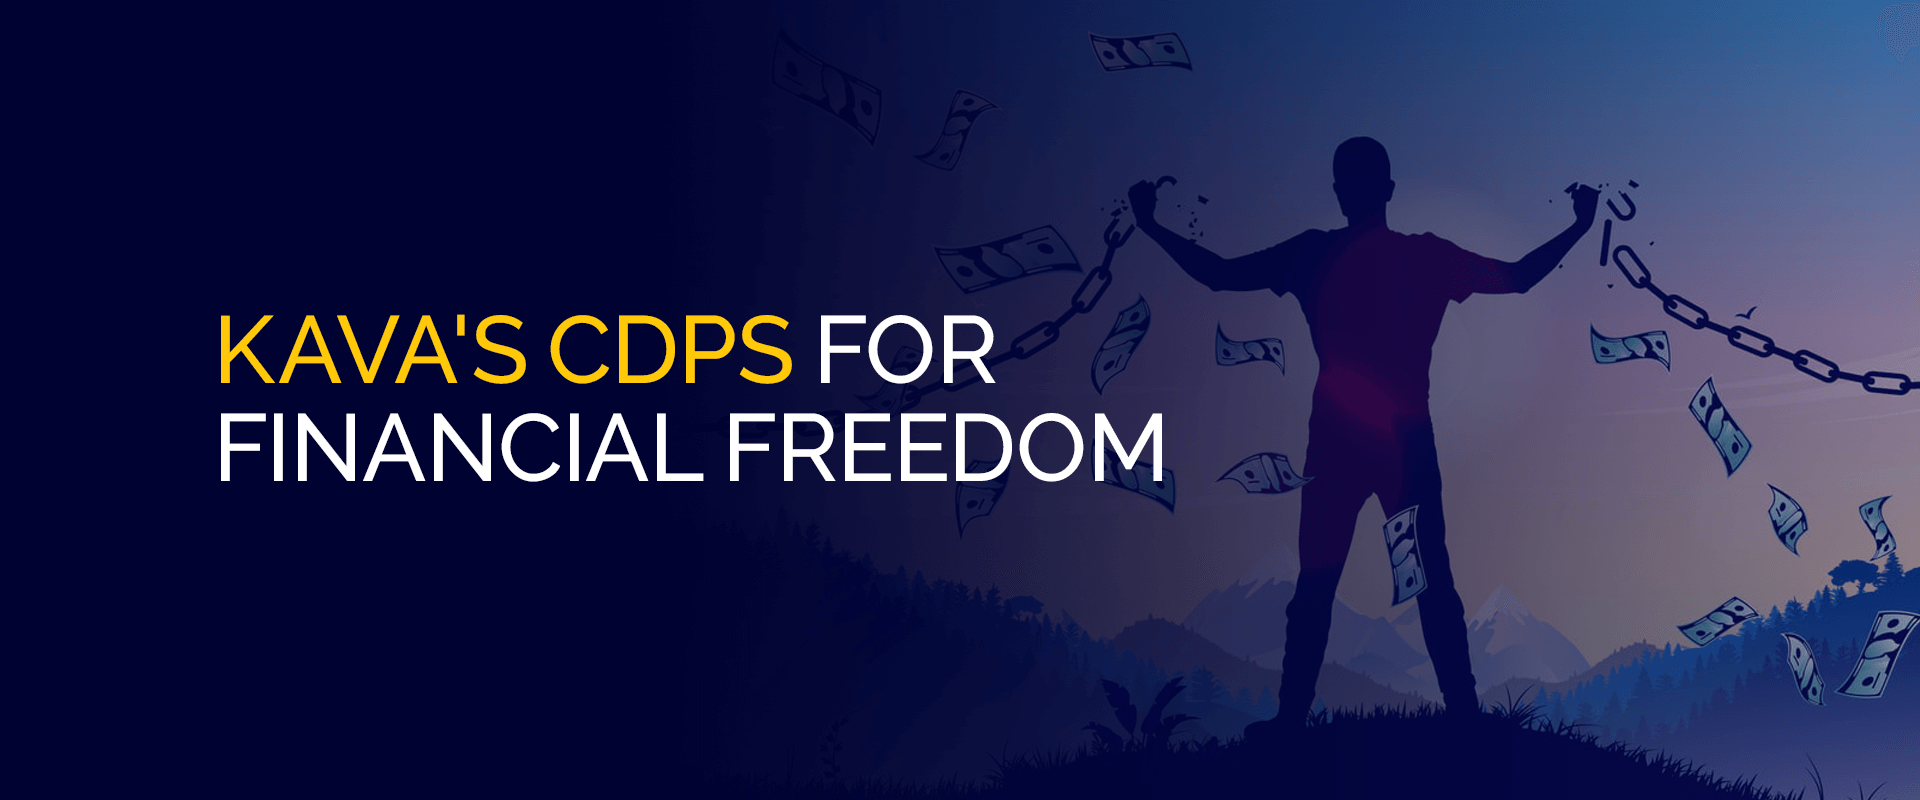 Les CDP de Kava pour la liberté financière